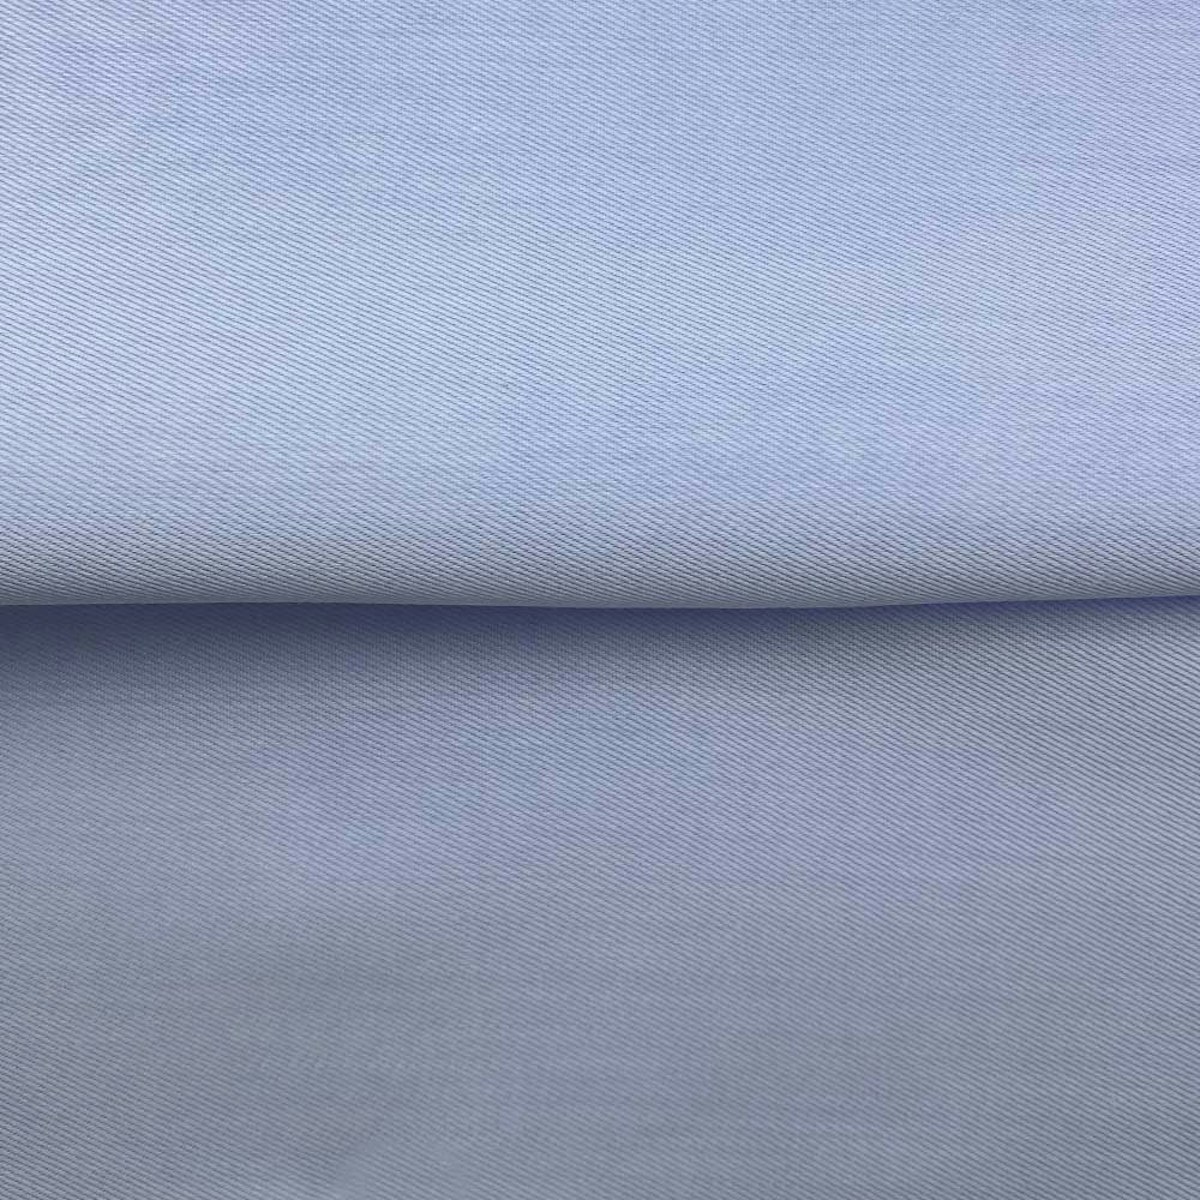 InStitchu Shirt Fabric 68